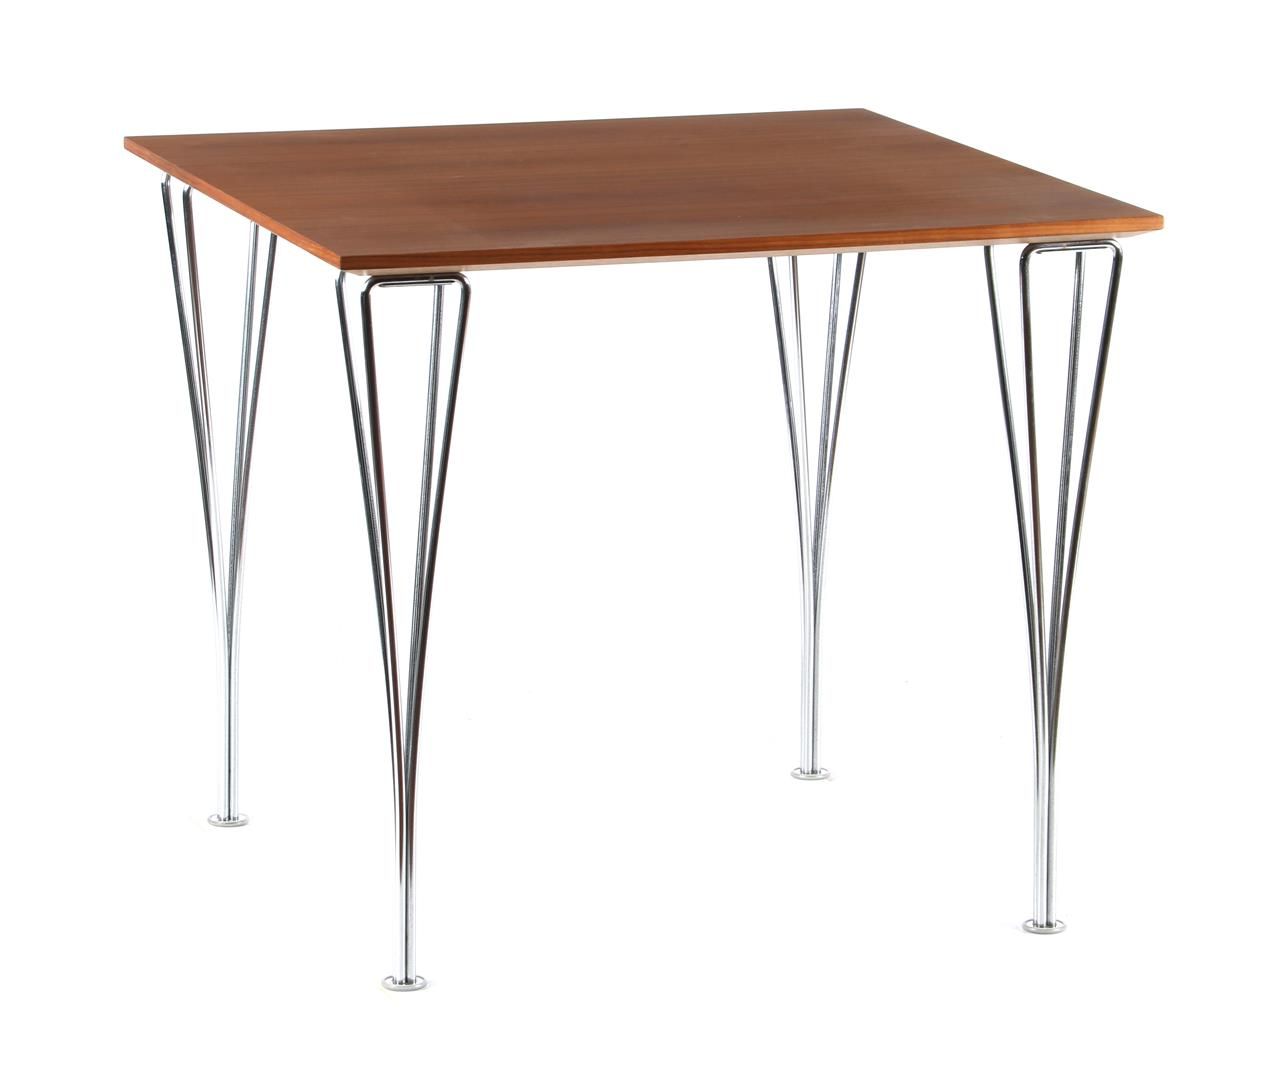 Arne Jacobsen Arne Jacobsen (1902-1971)

Dining room table with chromed metal ha&hellip;